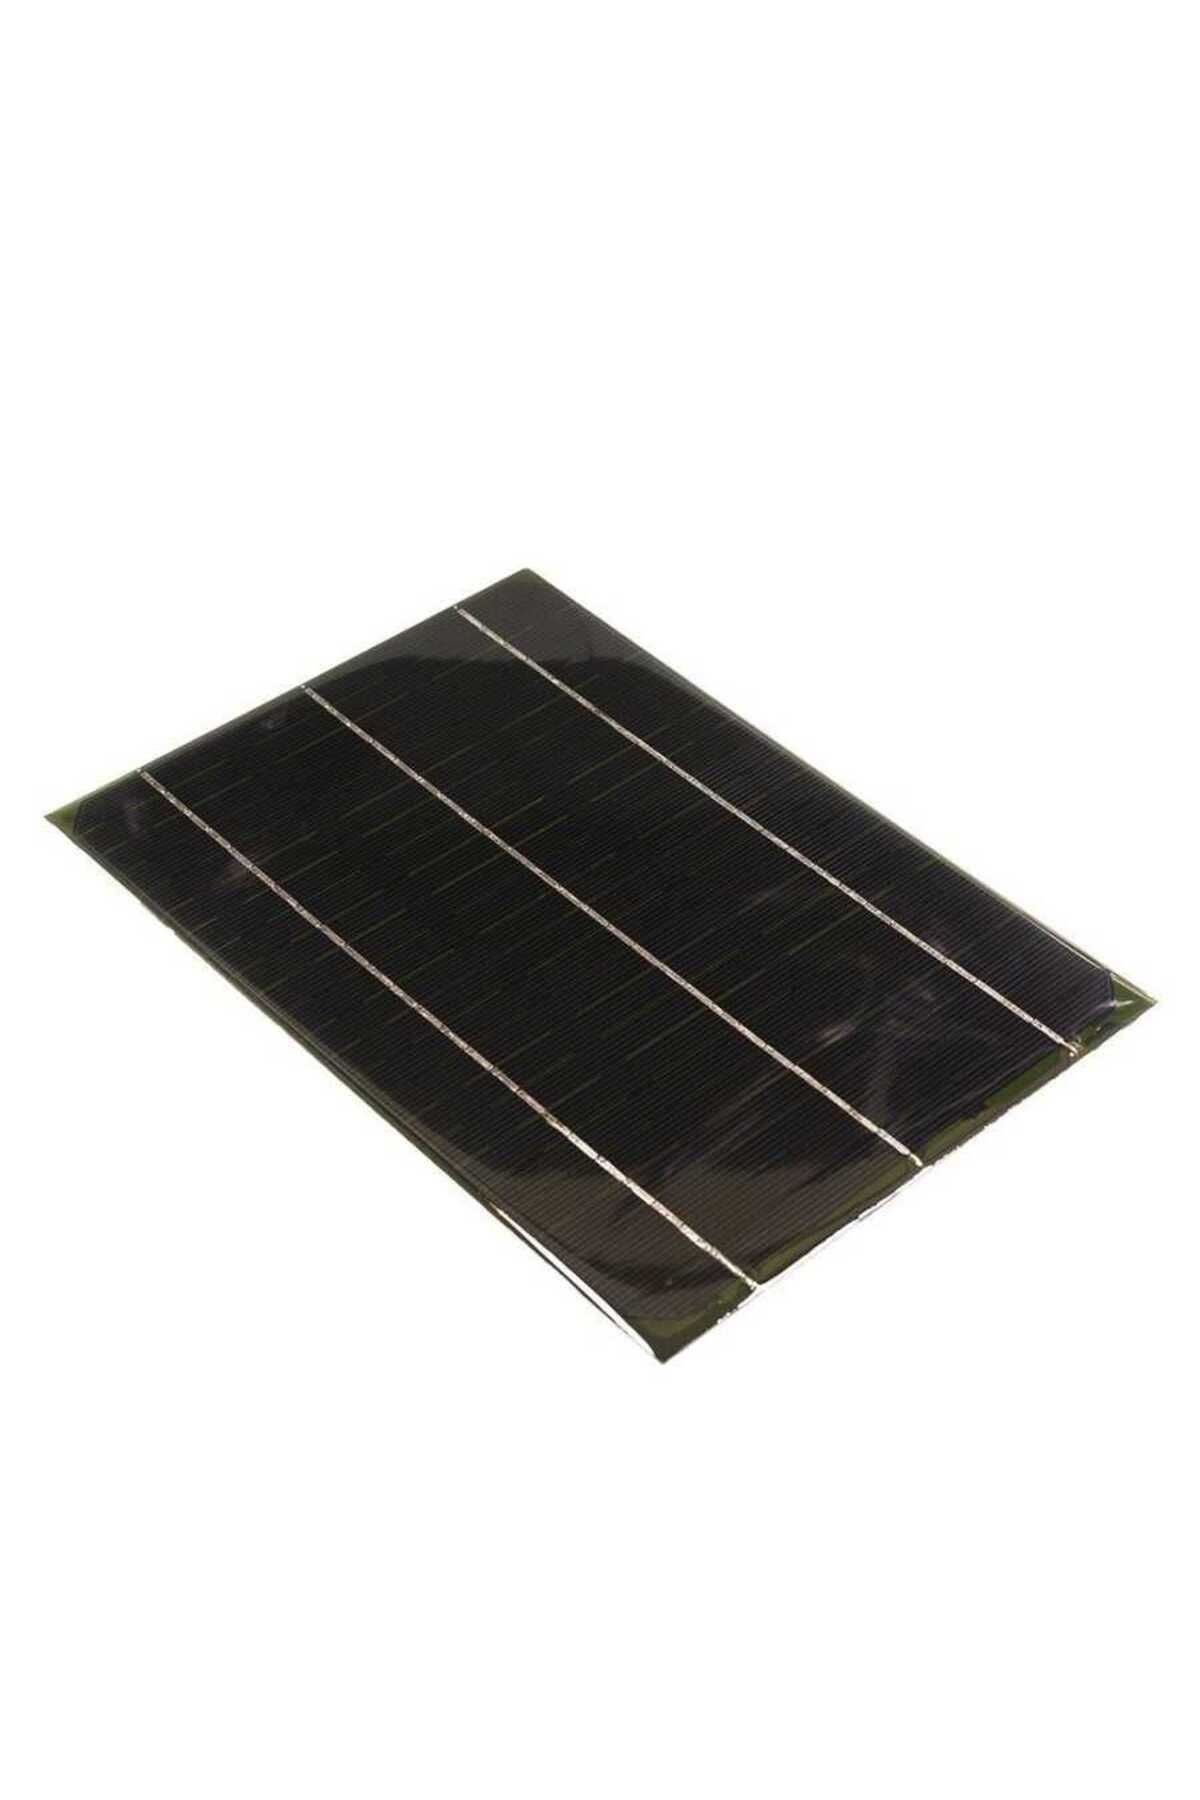 Profuse 12V 500mA Solar Panel - Güneş Pili